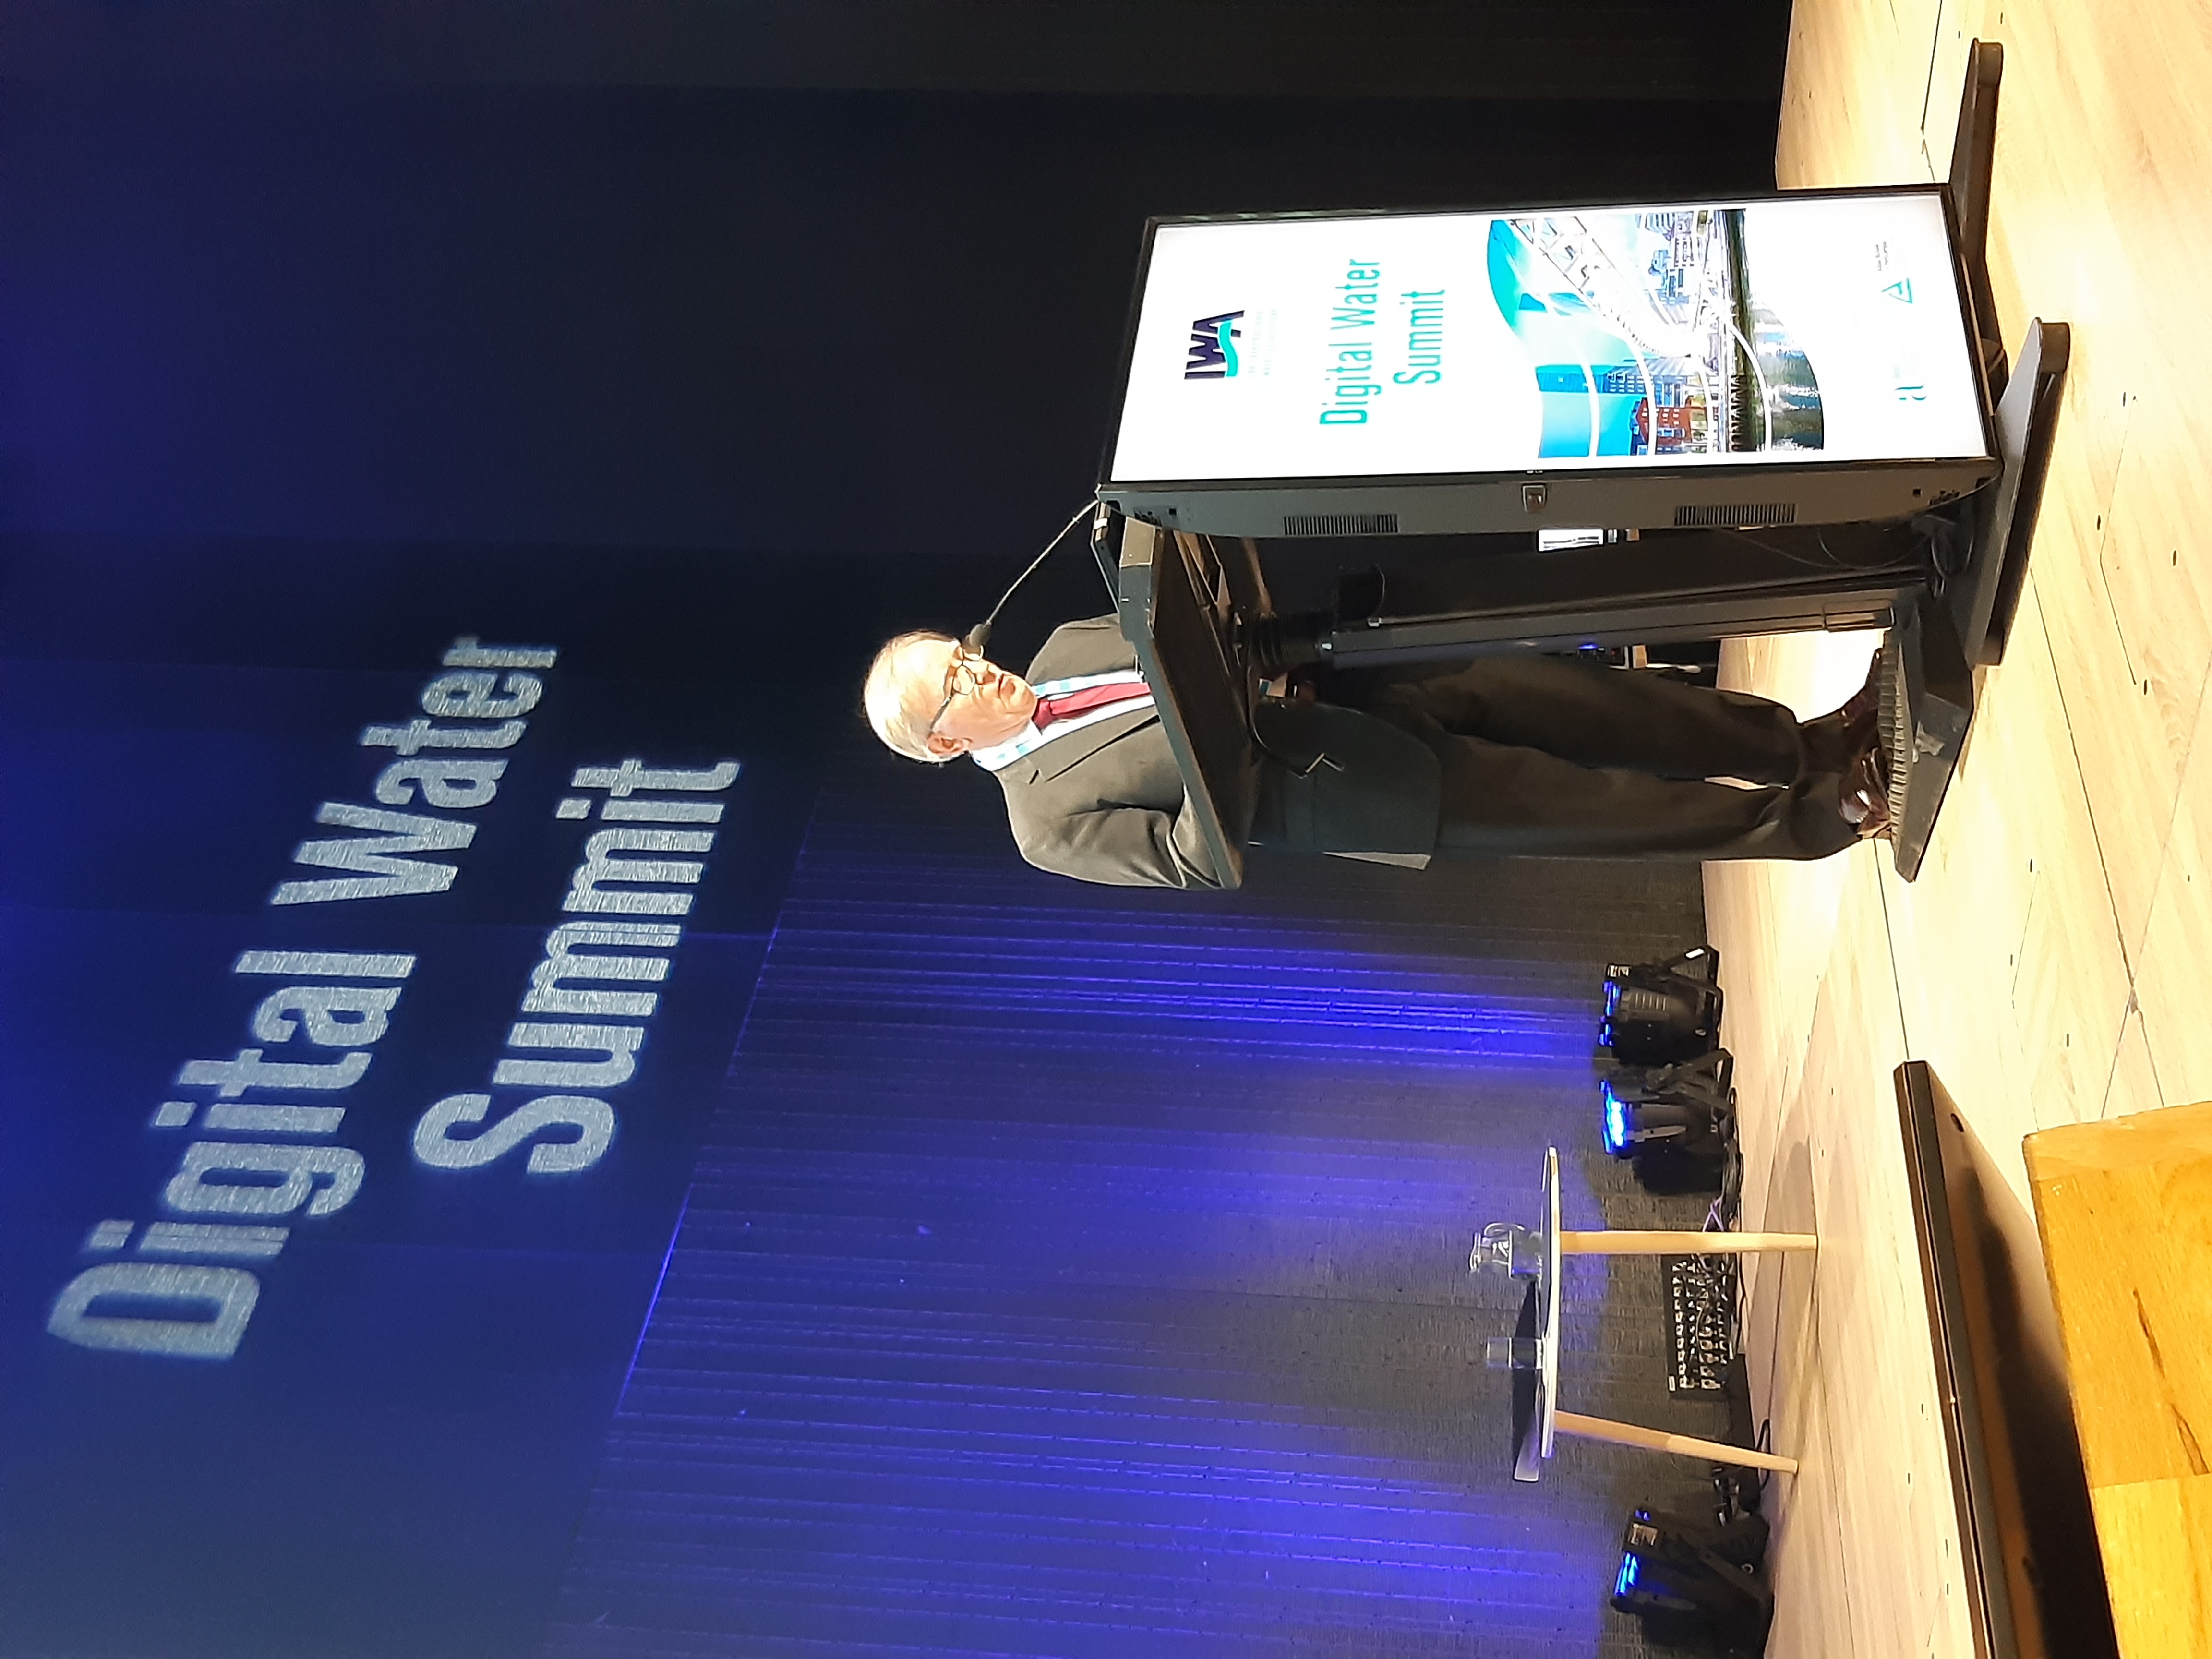 El presidente de AEAS participa en la inauguración del congreso internacional IWA Digital Water Summit que se celebra en Bilbao